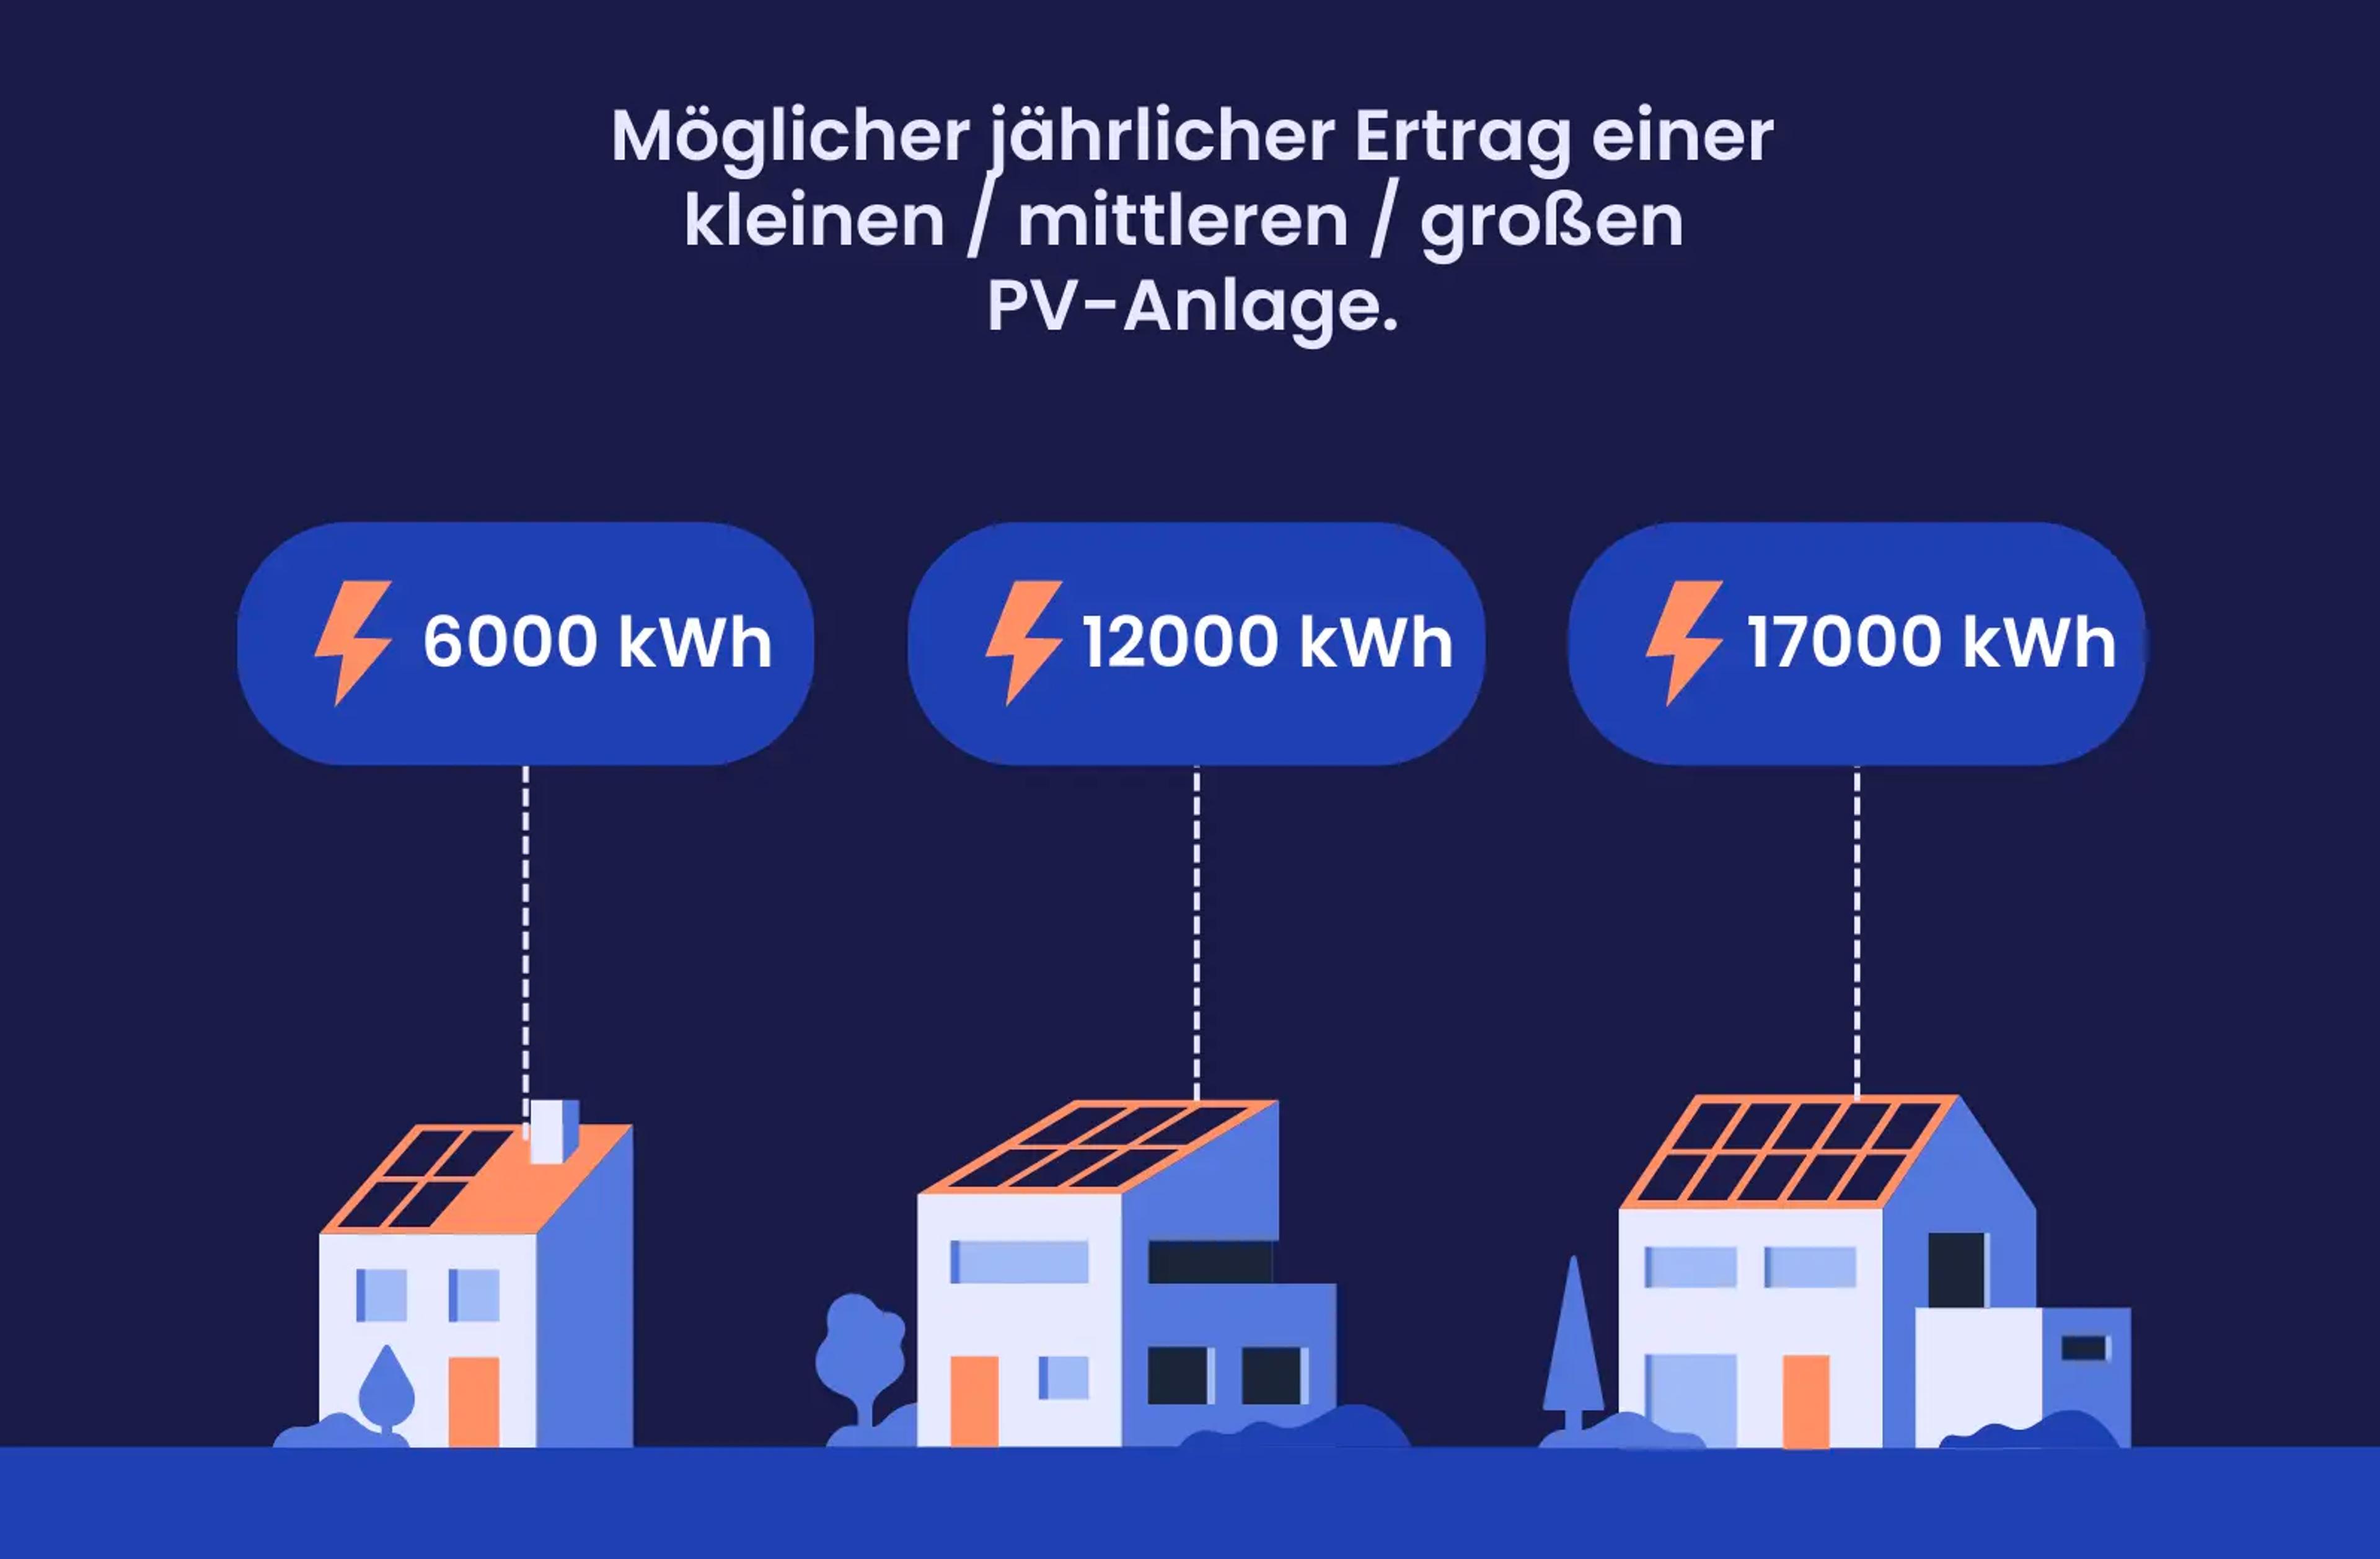 Eine Grafik, die zeigt, wie viele kWh Solaranlagen in Sachsen erzeugen können.